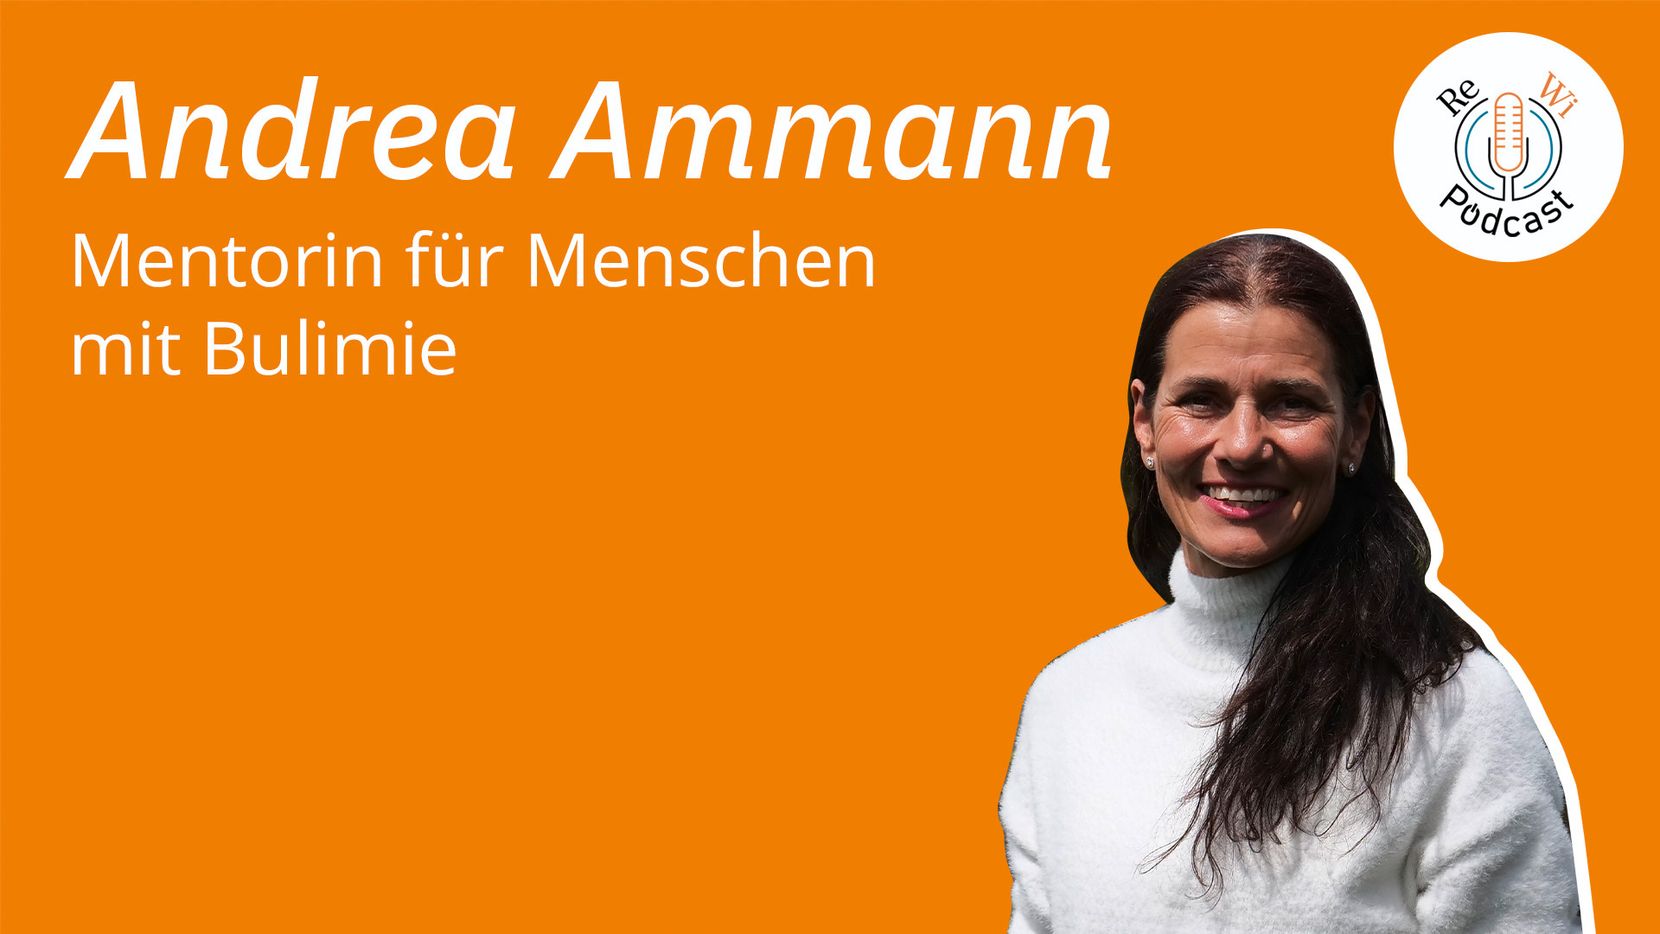 Andrea Ammann ist Mentorin für Menschen mit Bulimie